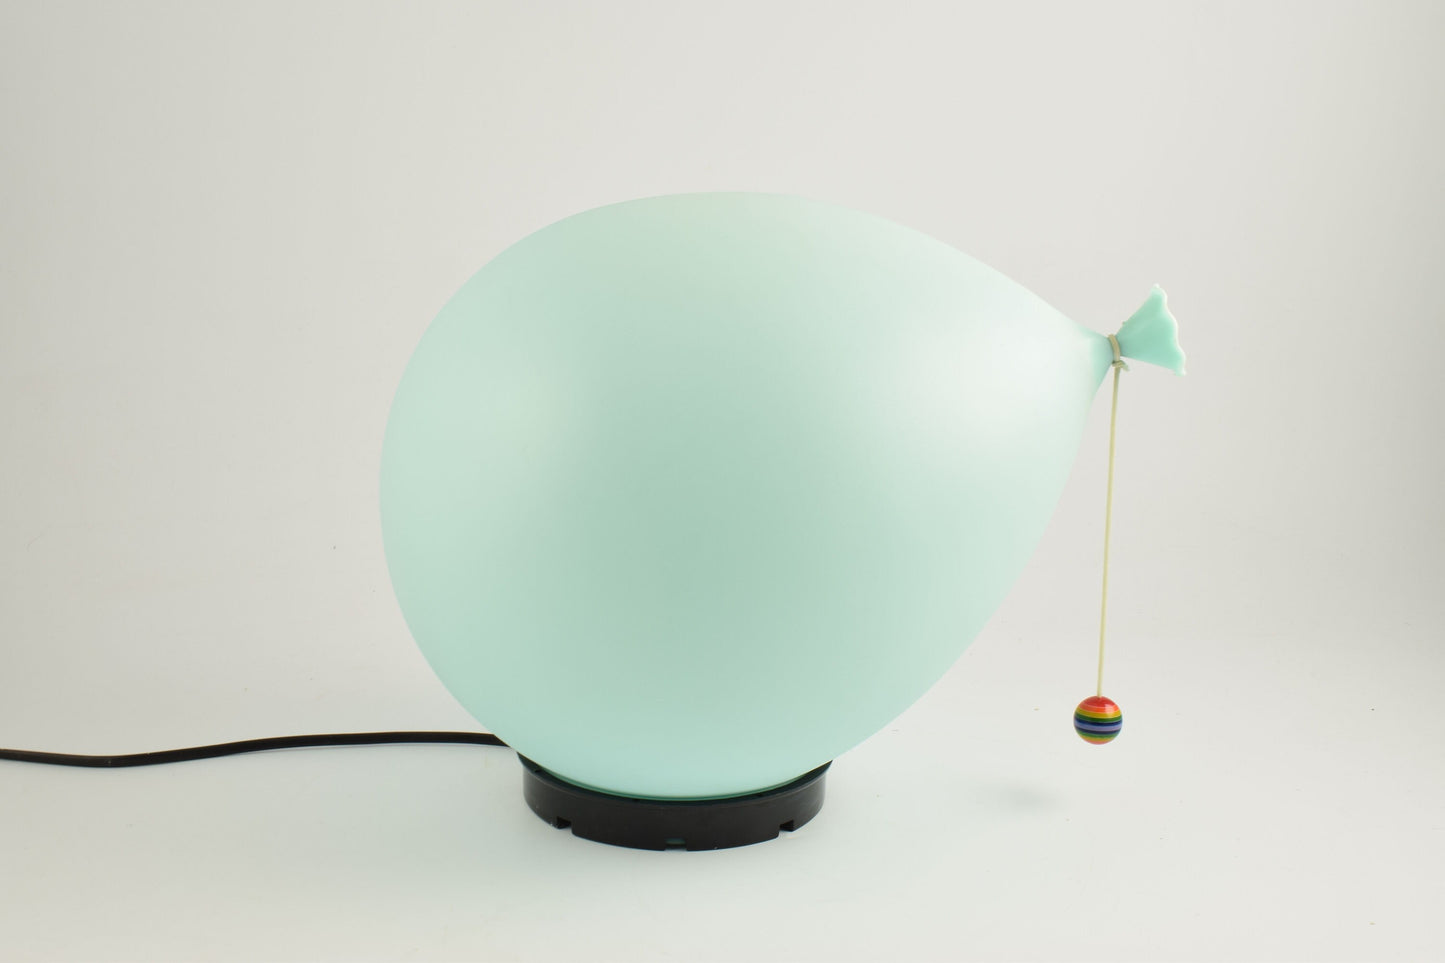 Ballonlamp ontworpen door Yves Christin voor Bilumen tafel- of wand/plafondlamp, Italië jaren 70 diffuser van geblazen kunststof en zwarte ABS voet